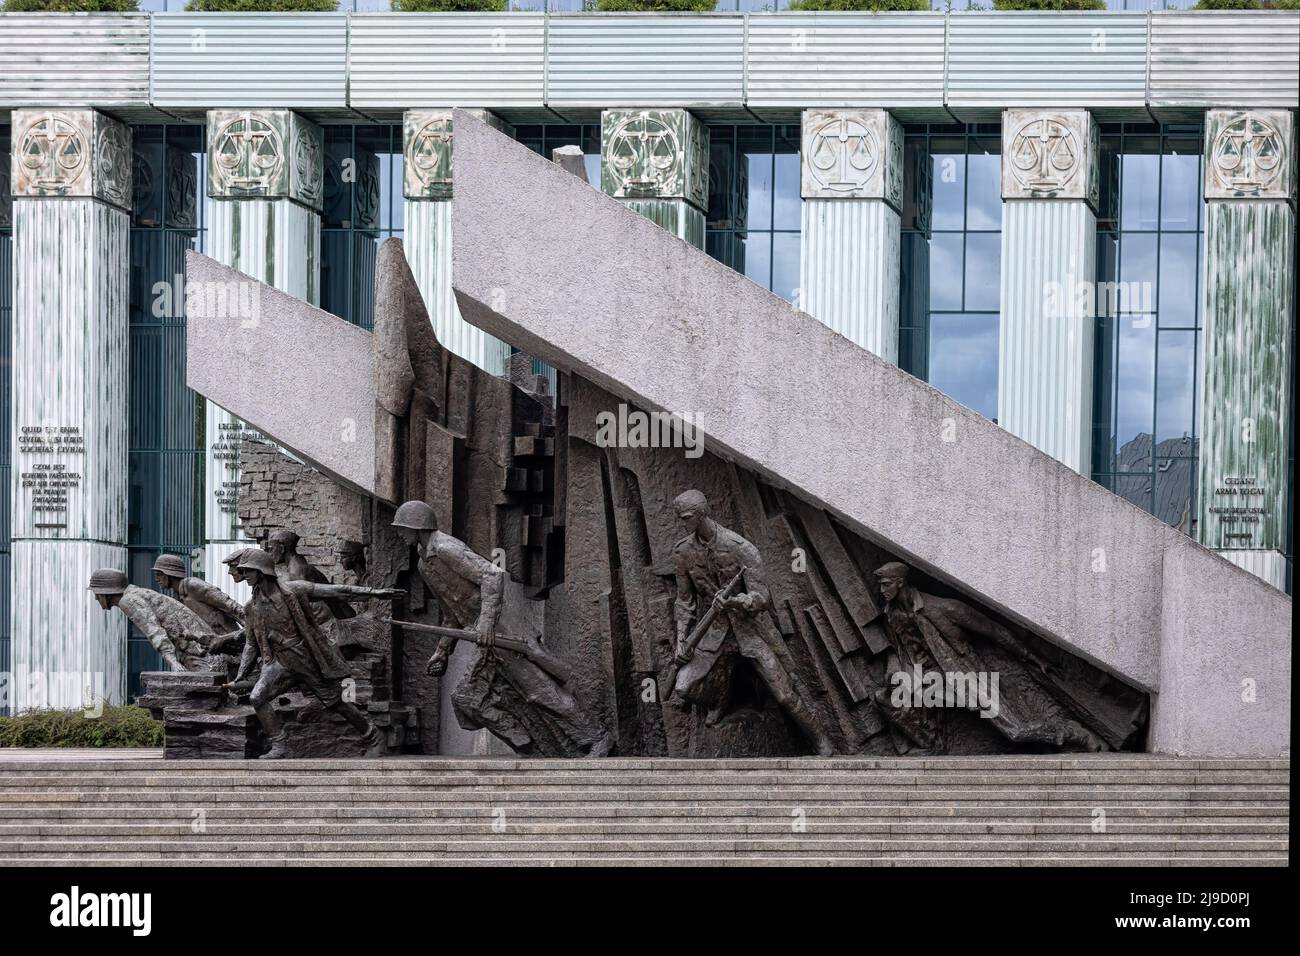 VARSAVIA, POLONIA - 14 MAGGIO 2022: Monumento commemorativo di Varsavia che commemora il sacrificio dei combattenti contro la resistenza nazista nell'estate 1944 durante il WW2 su Pl Foto Stock